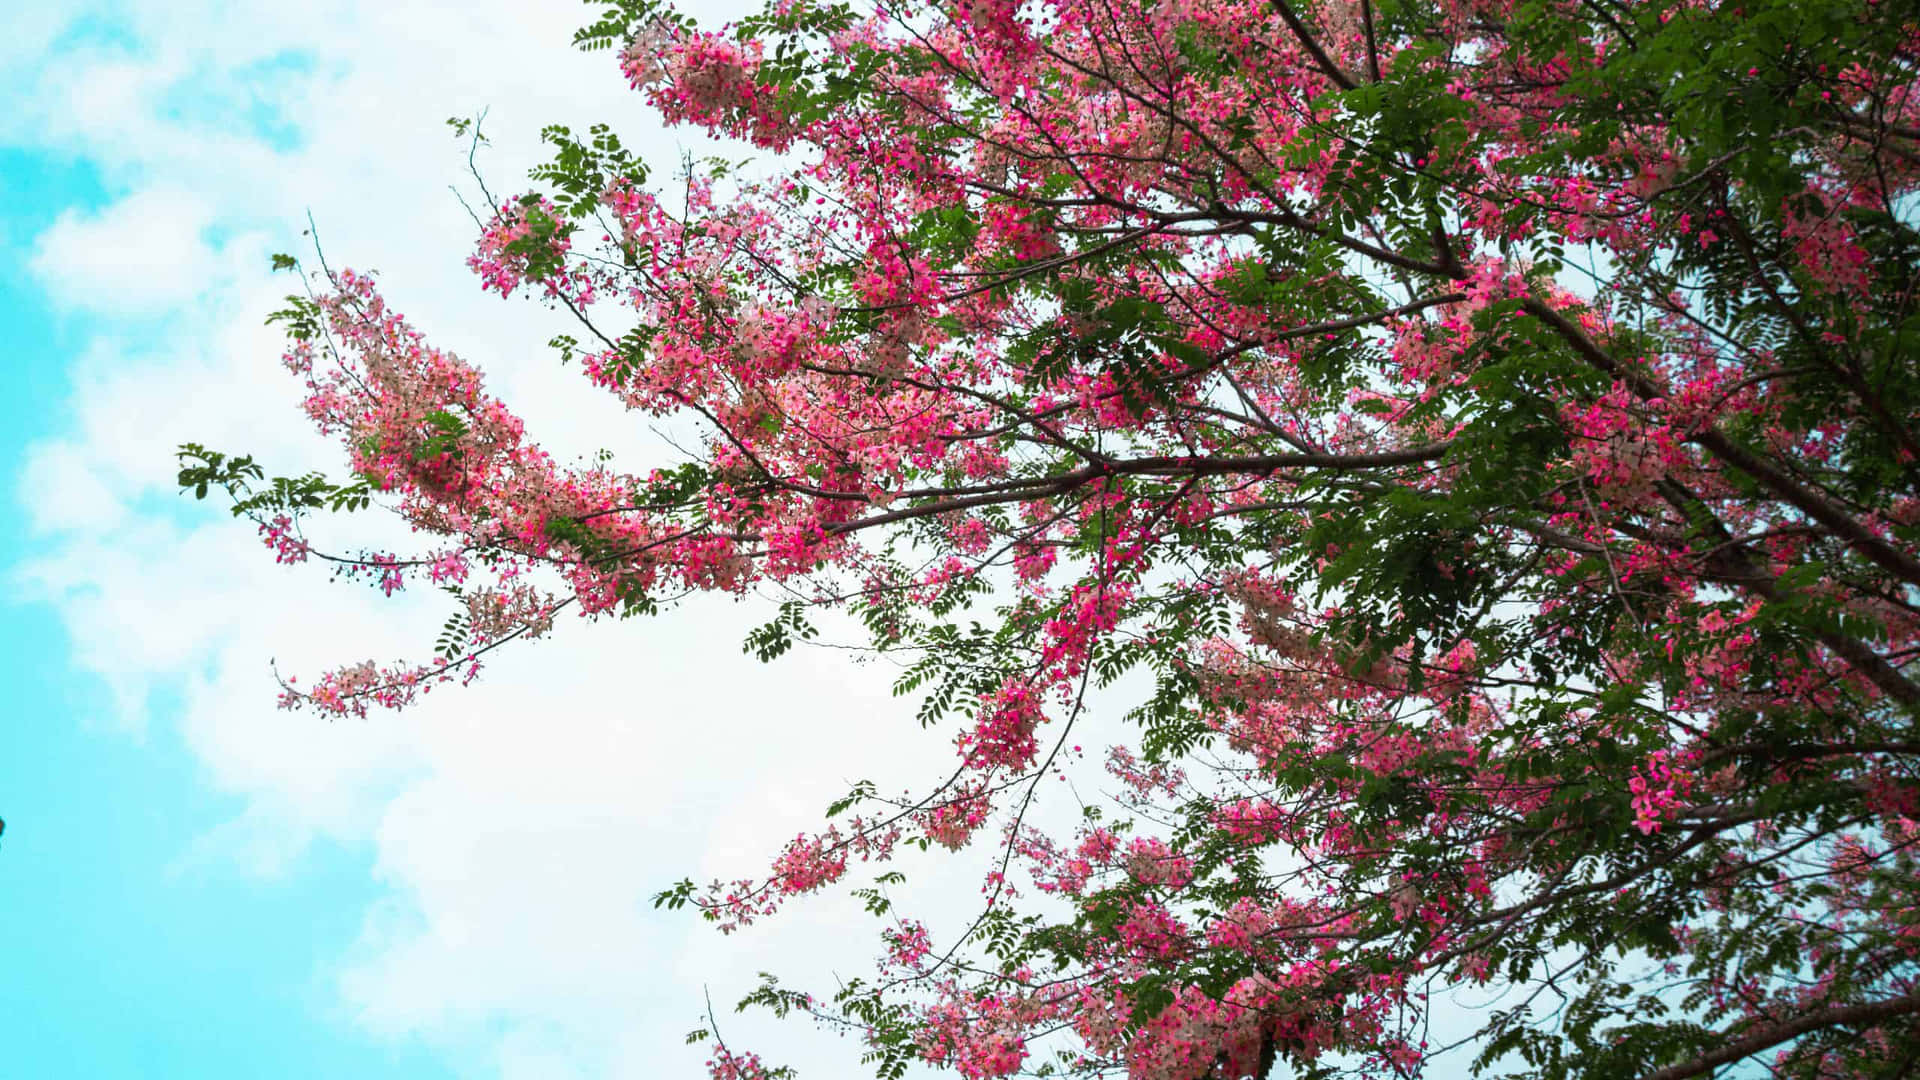 Blooming Flower Tree in Springtime Wallpaper